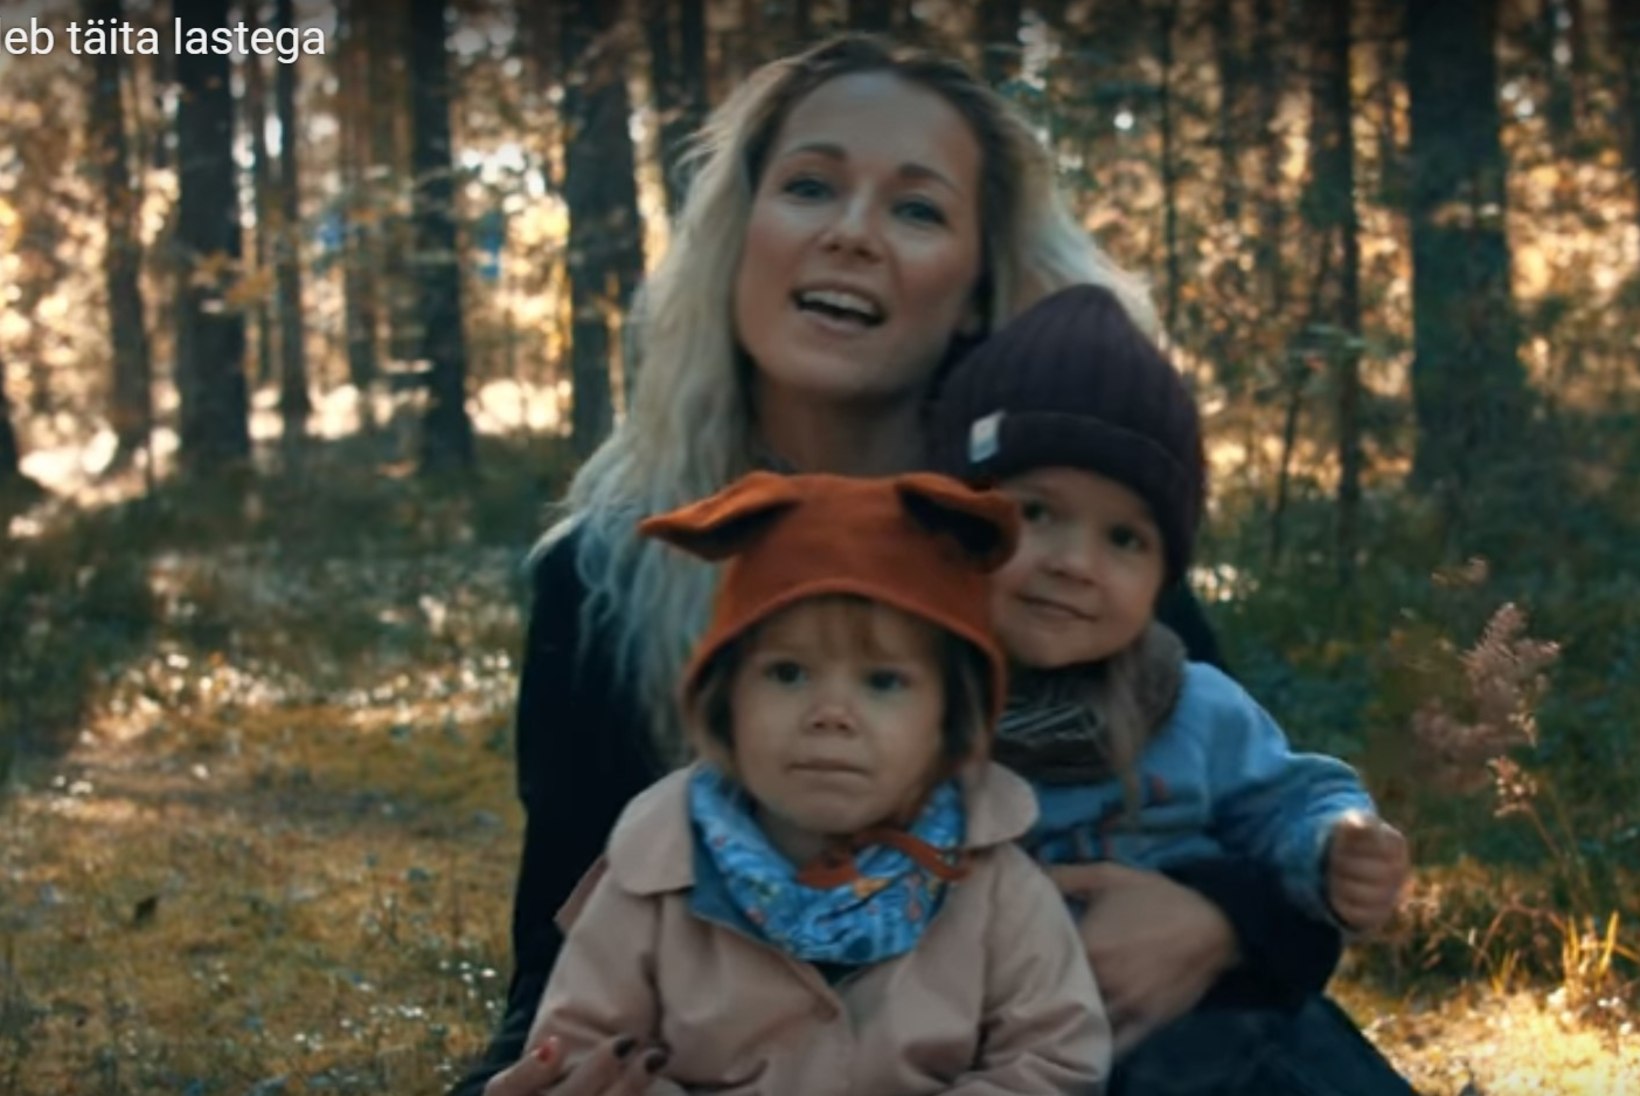 KUULA JA VAATA: Eesti tipplauljad tegid uusversiooni laulust „Maa tuleb täita lastega“